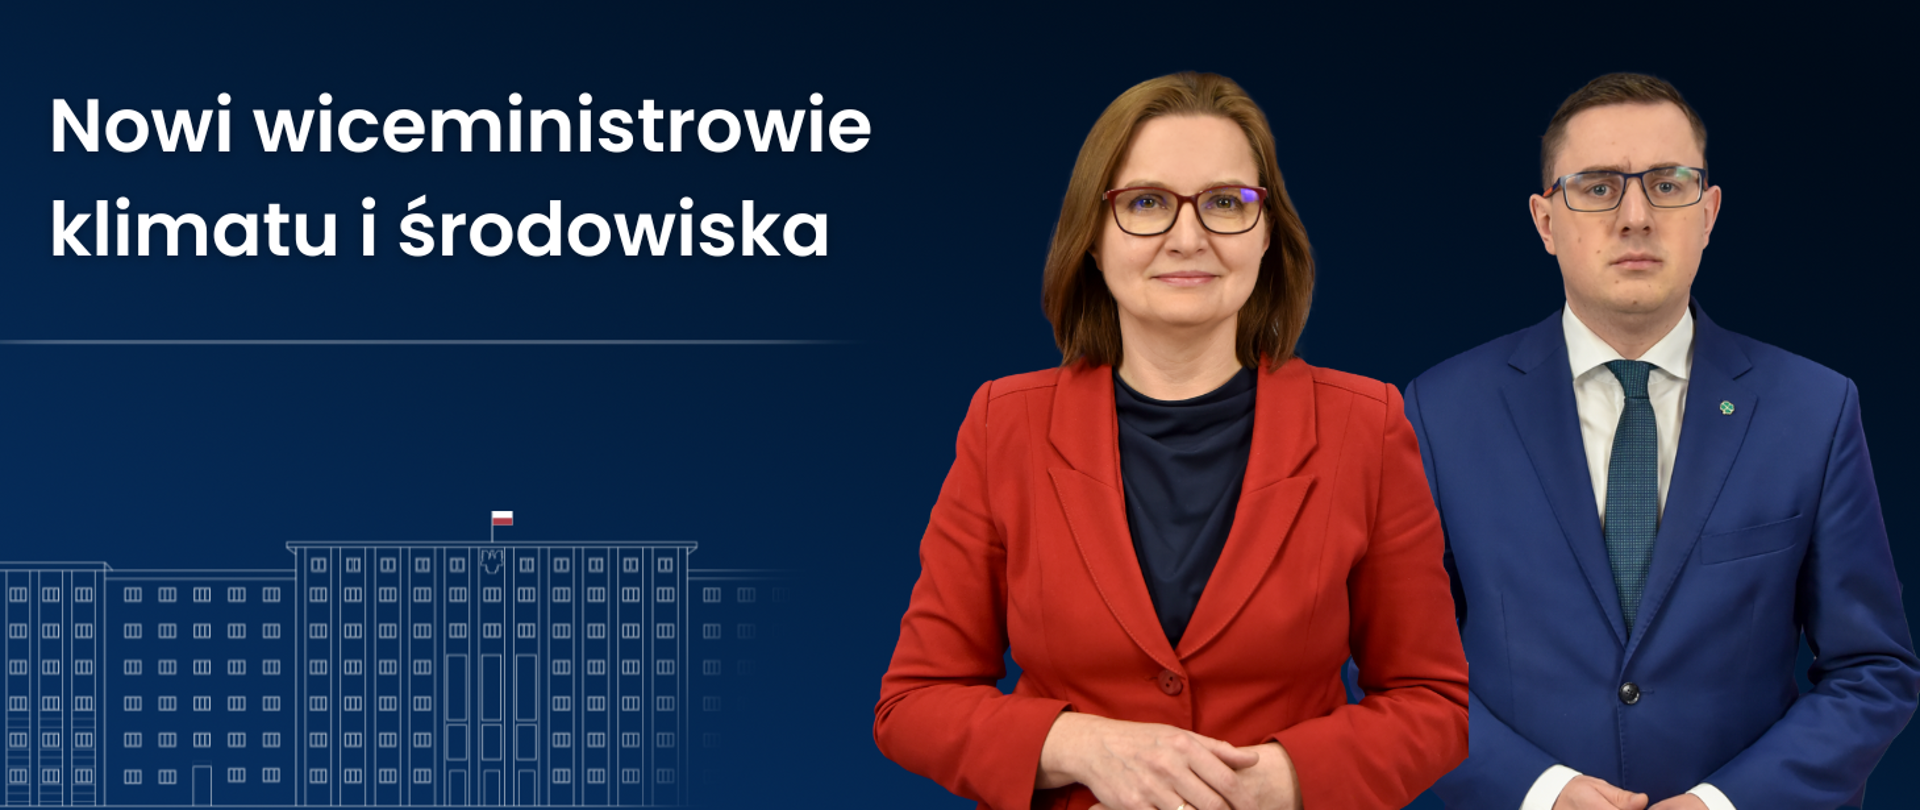 Nowi wiceministrowie klimatu i środowiska Anita Sowińska i Miłosz Motyka